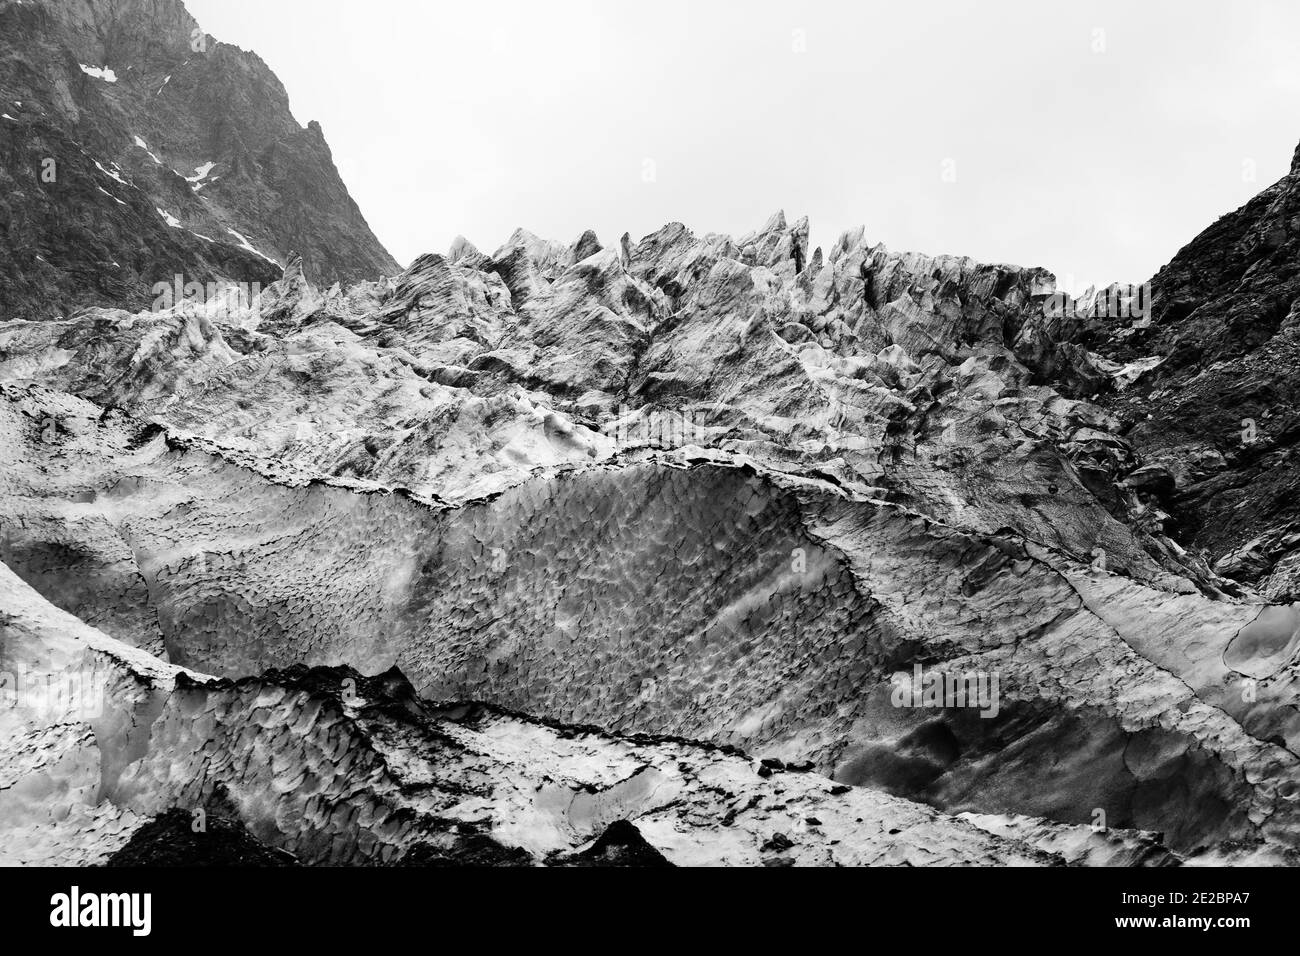 Glacier avec des crevasses profondes couvertes de neige et de terre dans les hautes montagnes rocheuses le jour gris. Montagnes du Caucase. Géorgie, région de Svanetia. Emplacement distant Banque D'Images